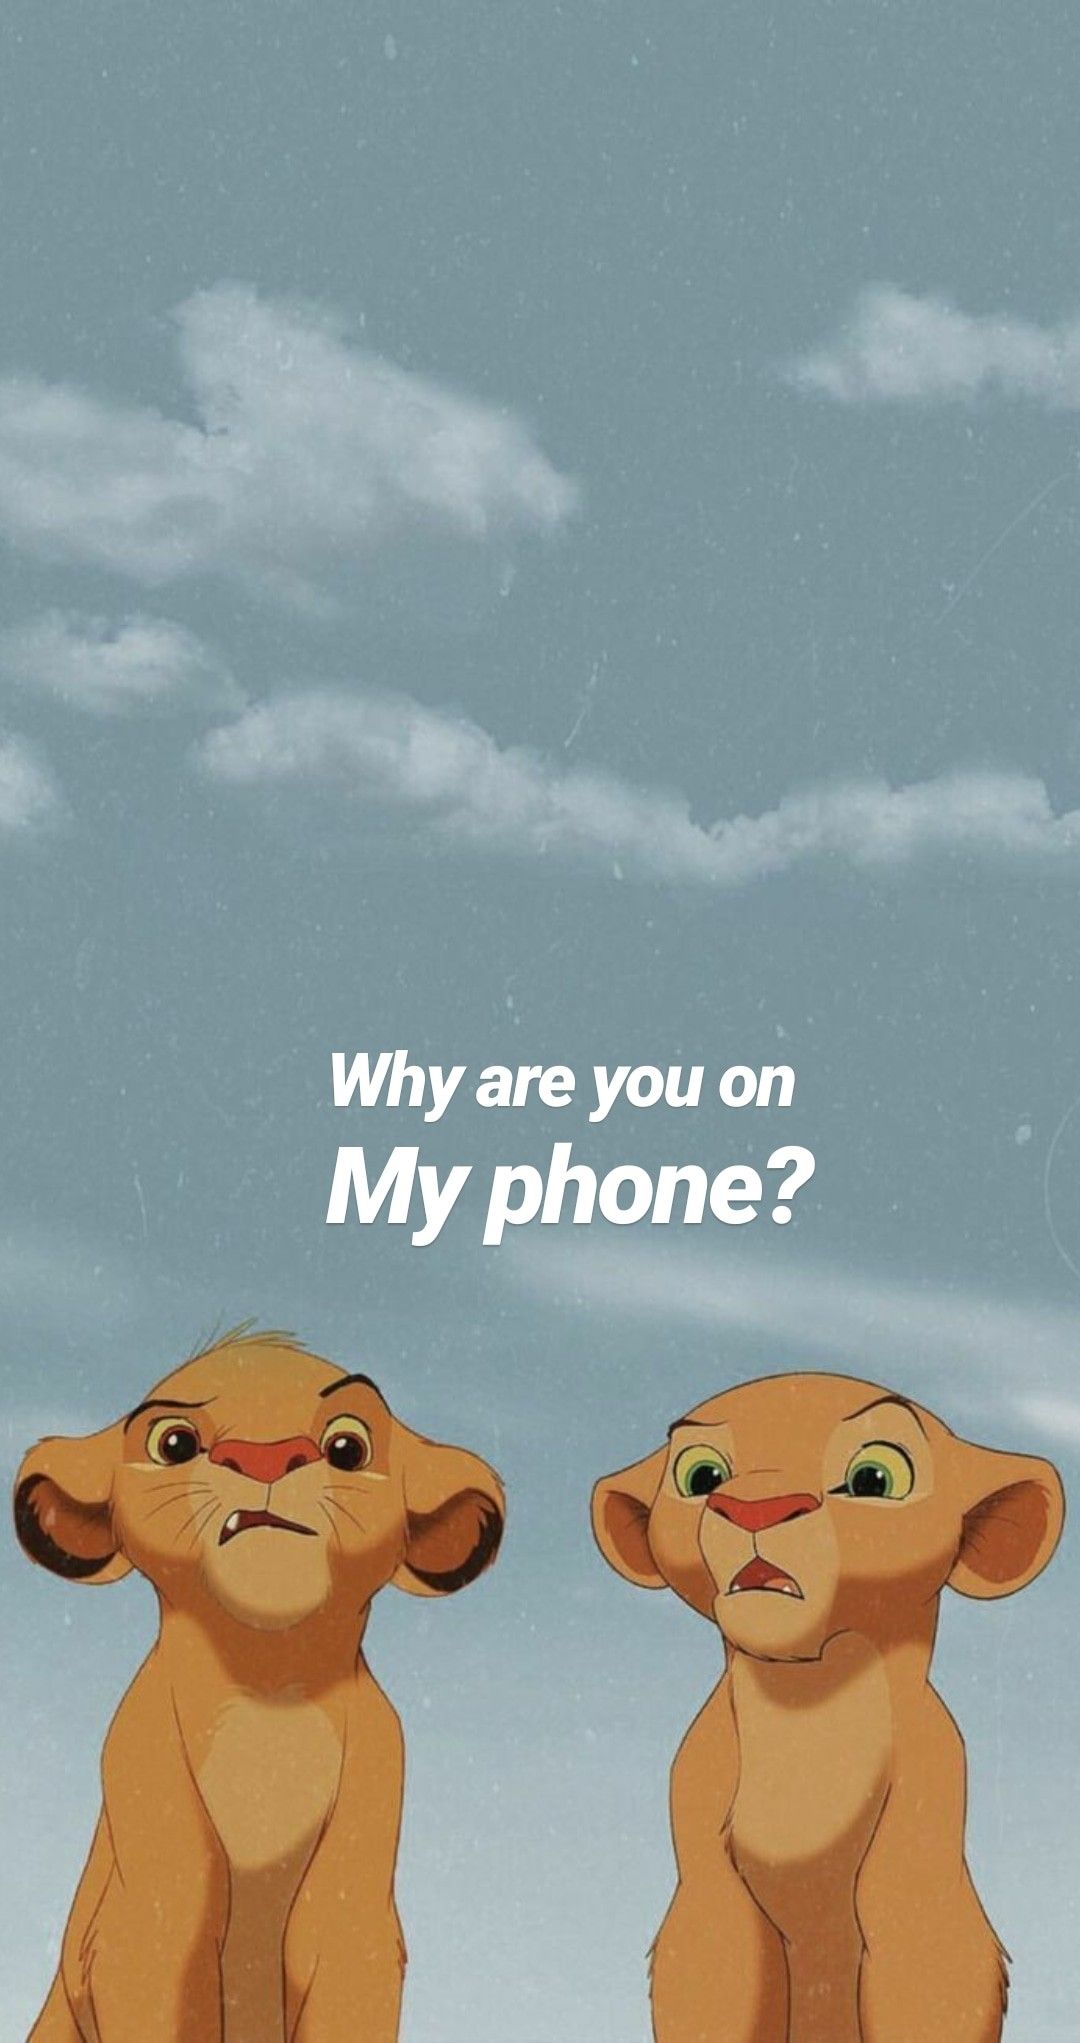 Art. Disney phone wallpaper, Funny phone